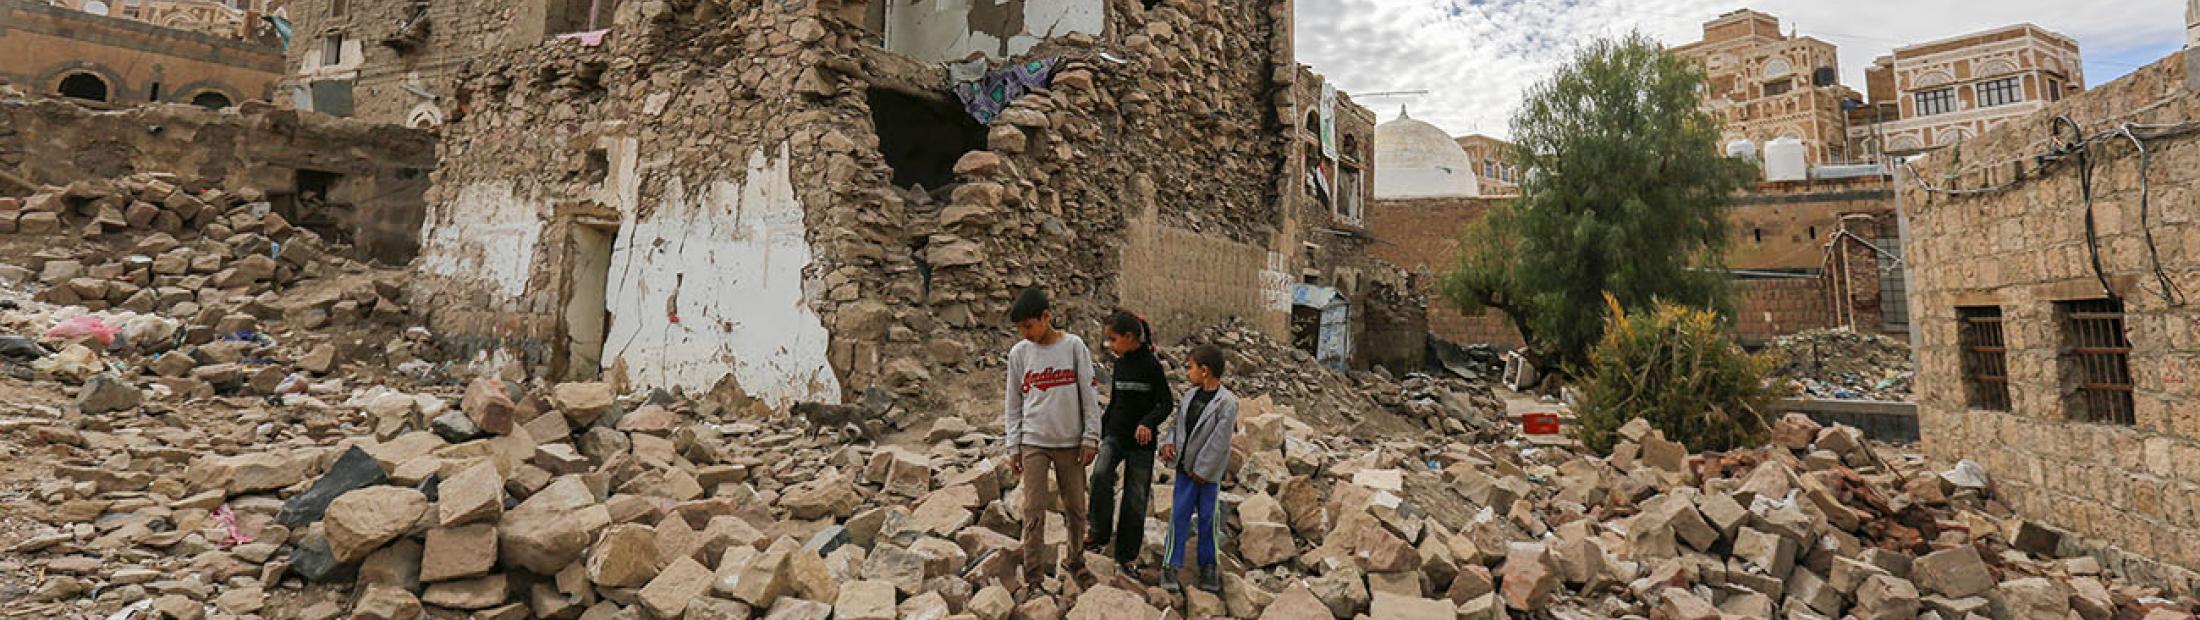 Yemen: una mirada atrás en 4 años de guerra